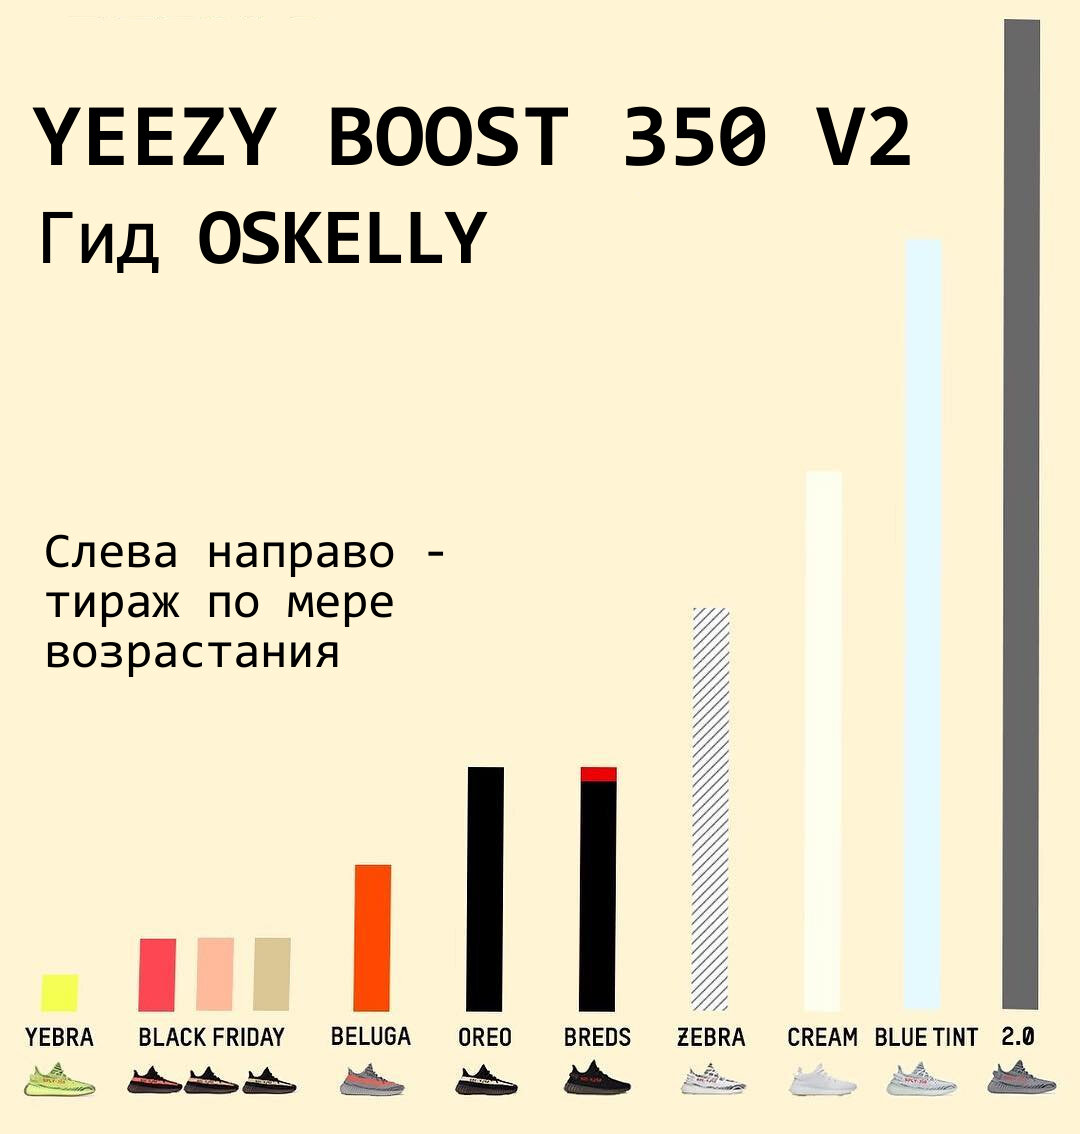  Благодаря коллаборации Канье Уэста и Adidas почти три года назад появились кроссовки Yeezy Boost 350, которые приобрели бешеную популярность.